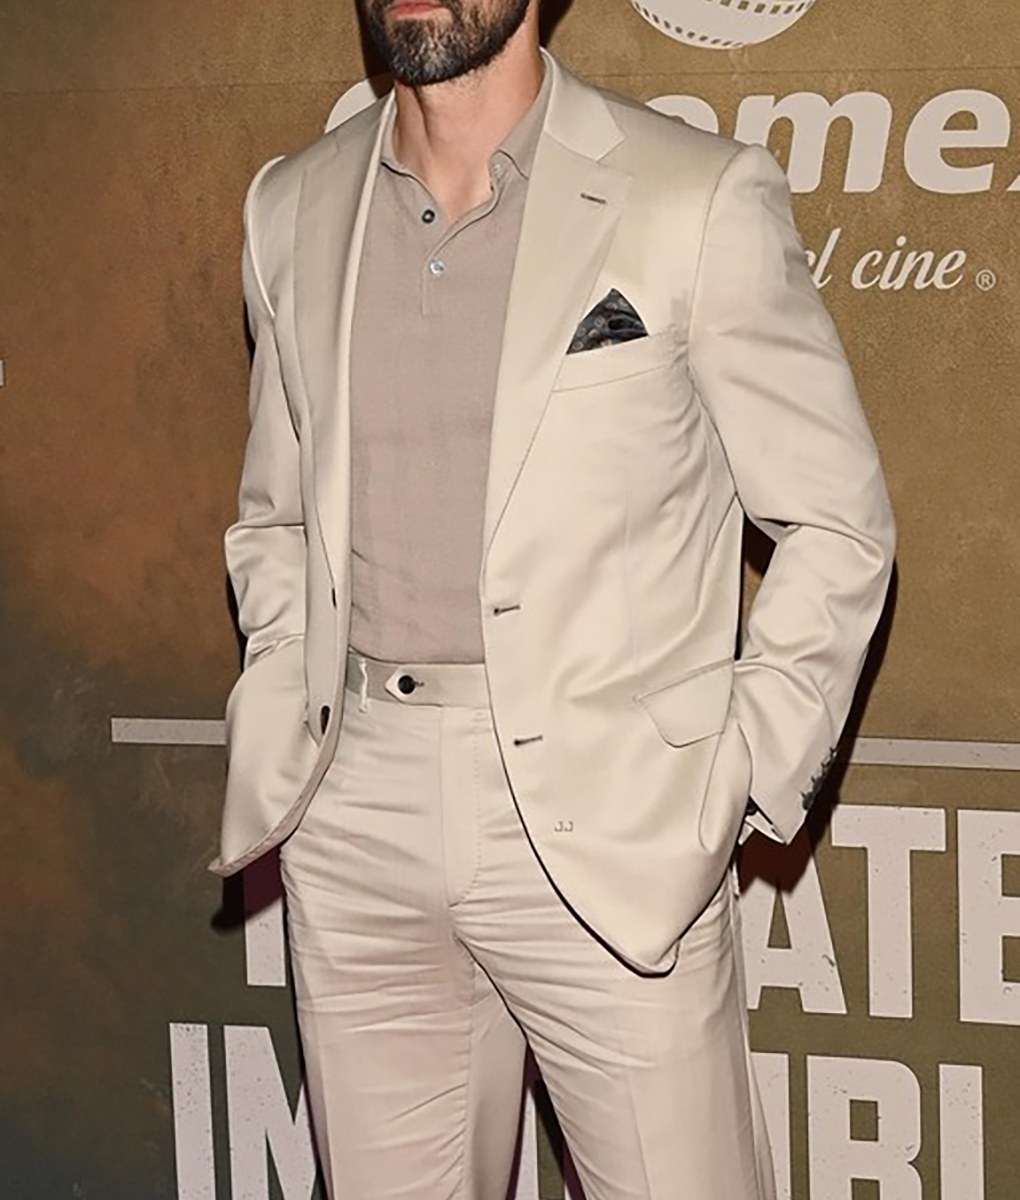 Milo Ventimiglia Cream Suit (2)